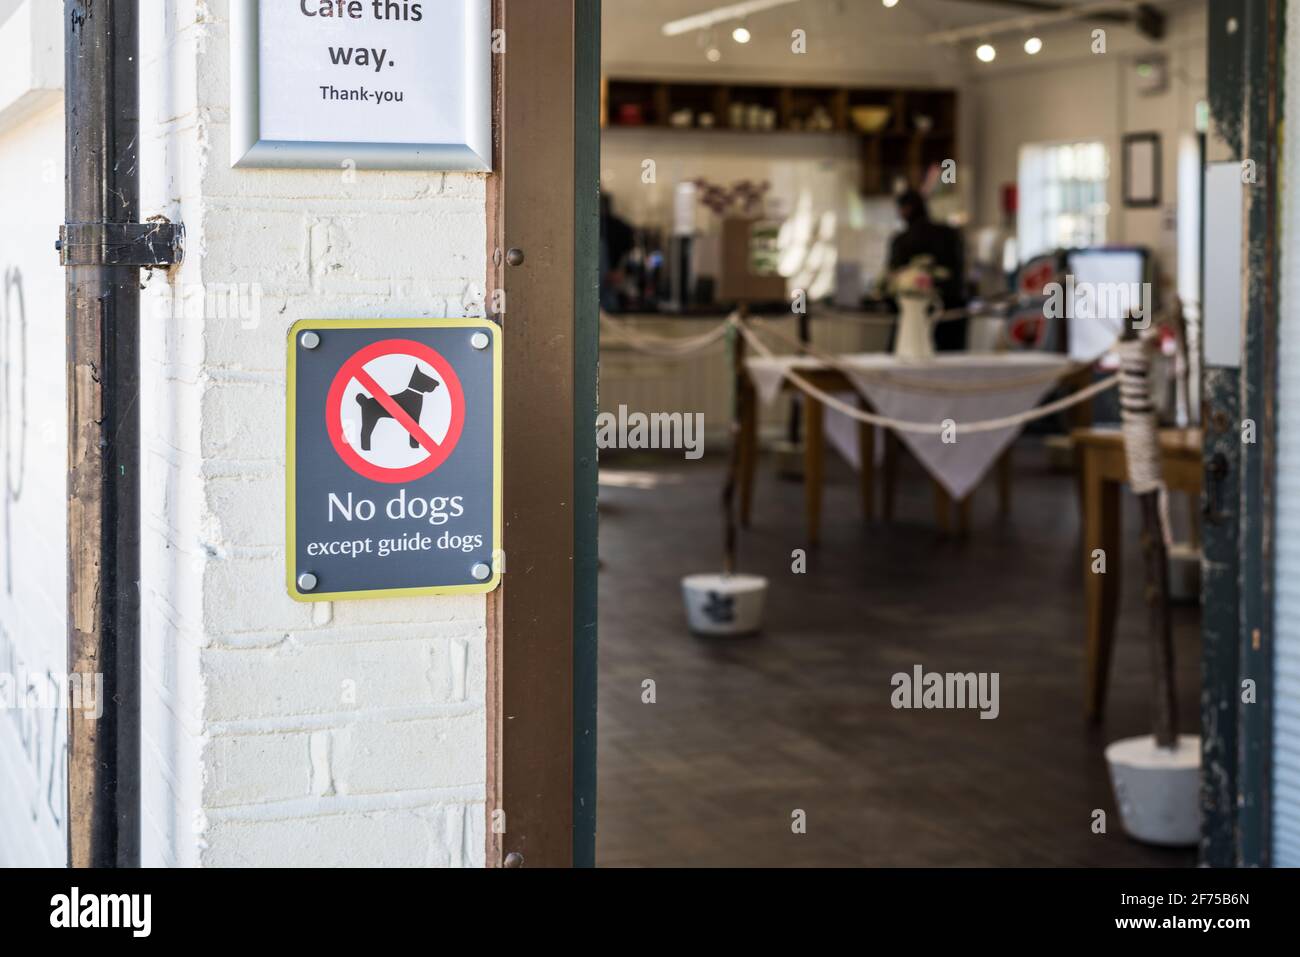 Non sono ammessi cani, ad eccezione dei cani guida, cartello con l'indicazione visiva sul posto entrata del cafe Foto Stock